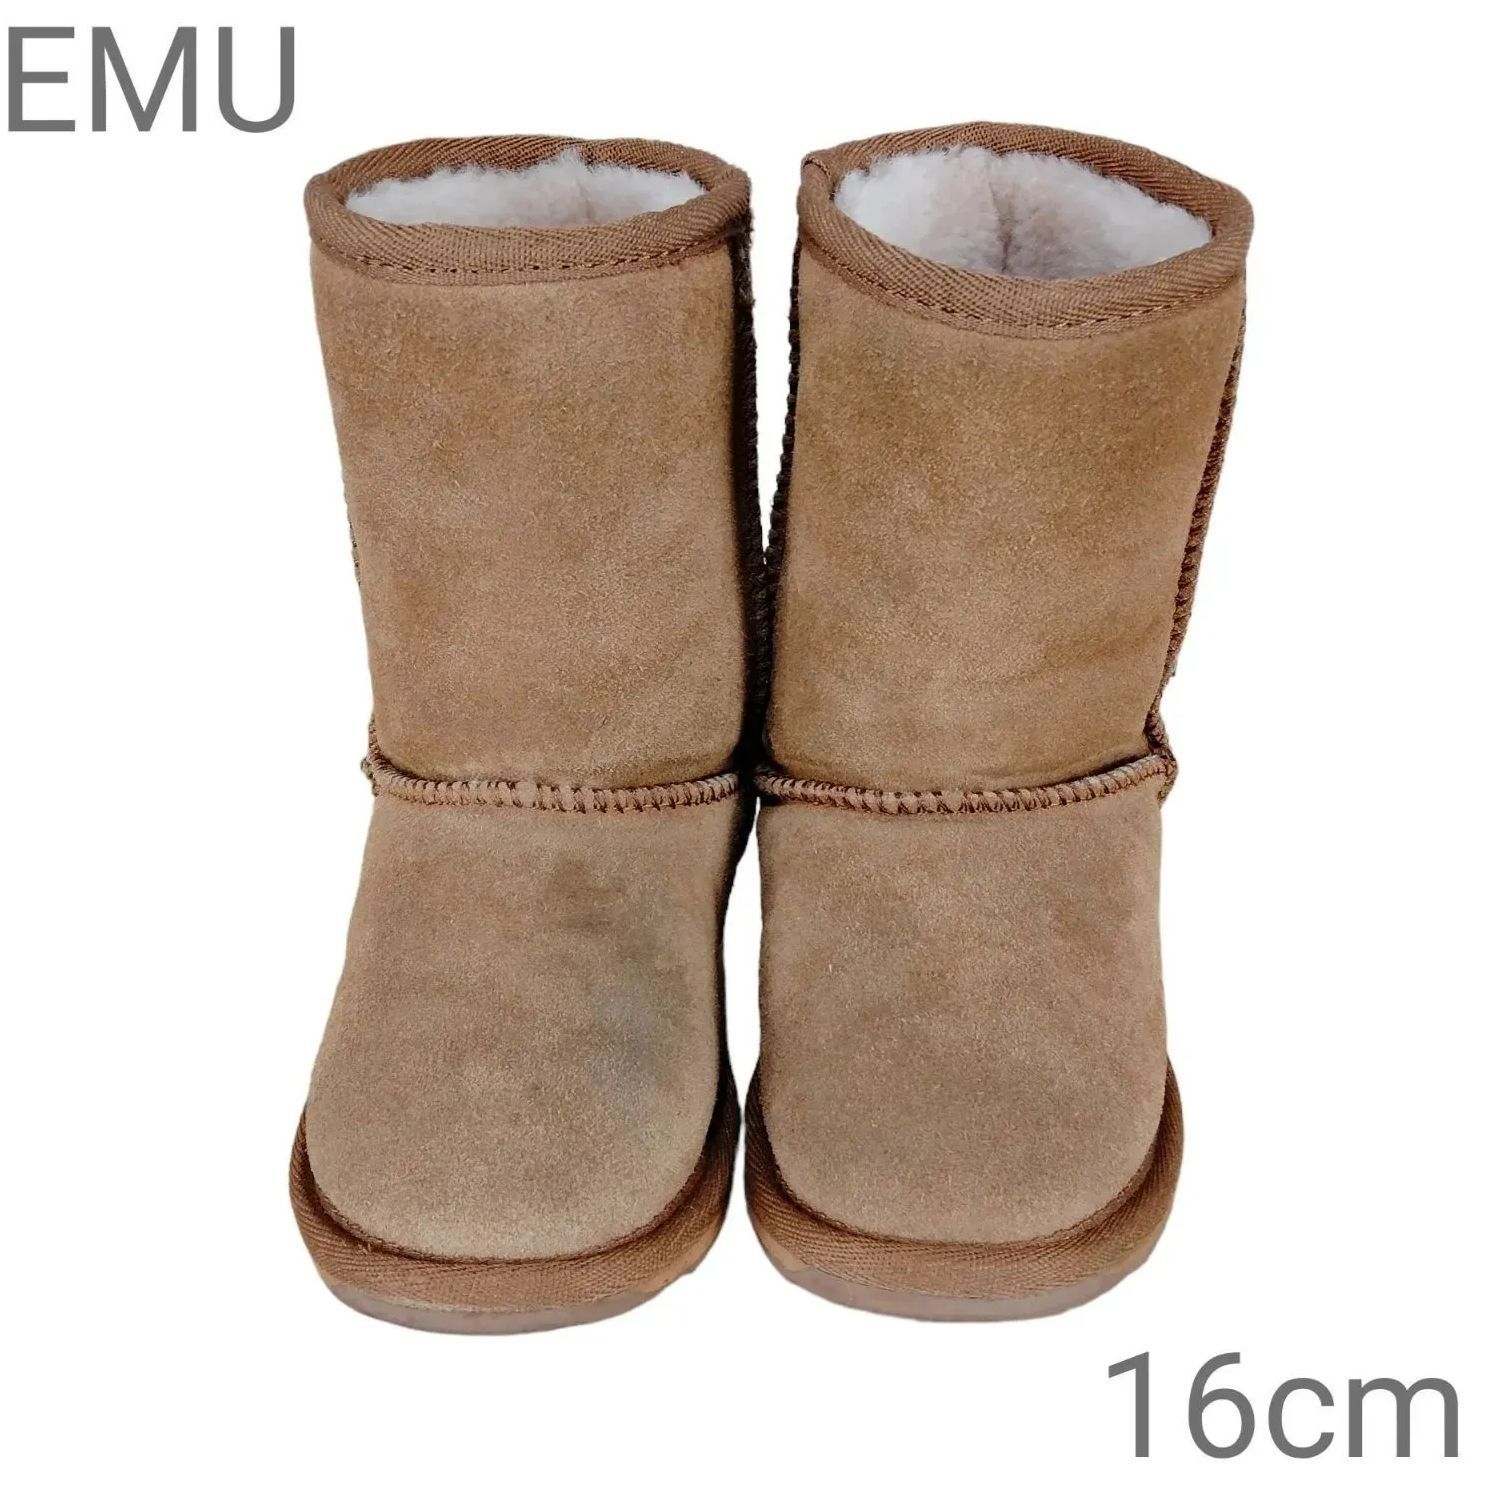 EMU エミューオーストラリア キッズムートンブーツ 16cm 子供用ブーツ